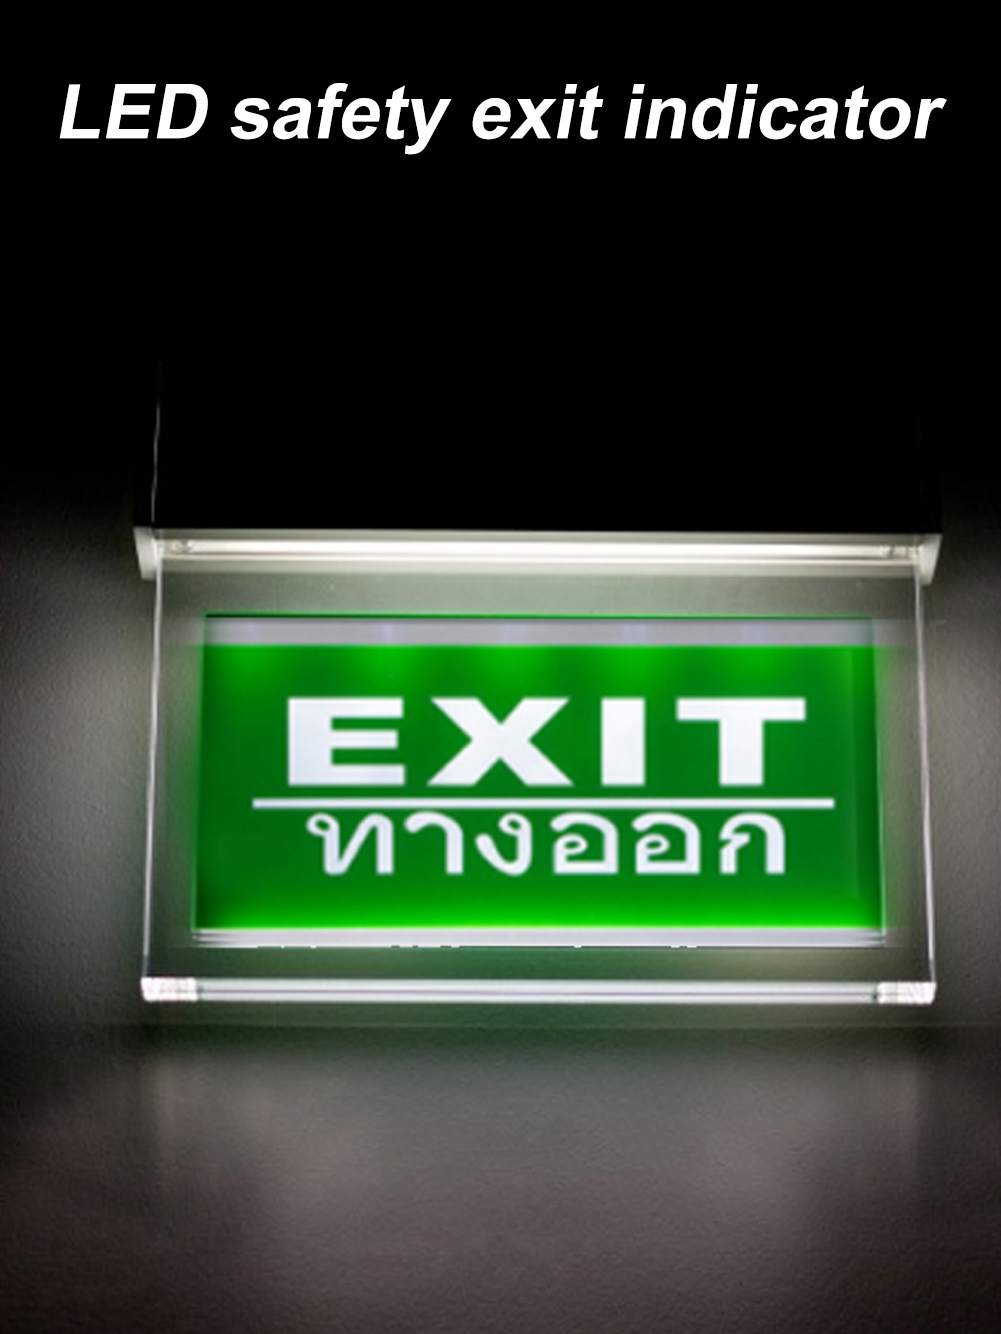 Acrylic LED Emergency Exit Lighting Sign Safety Evacuation Indicator Light